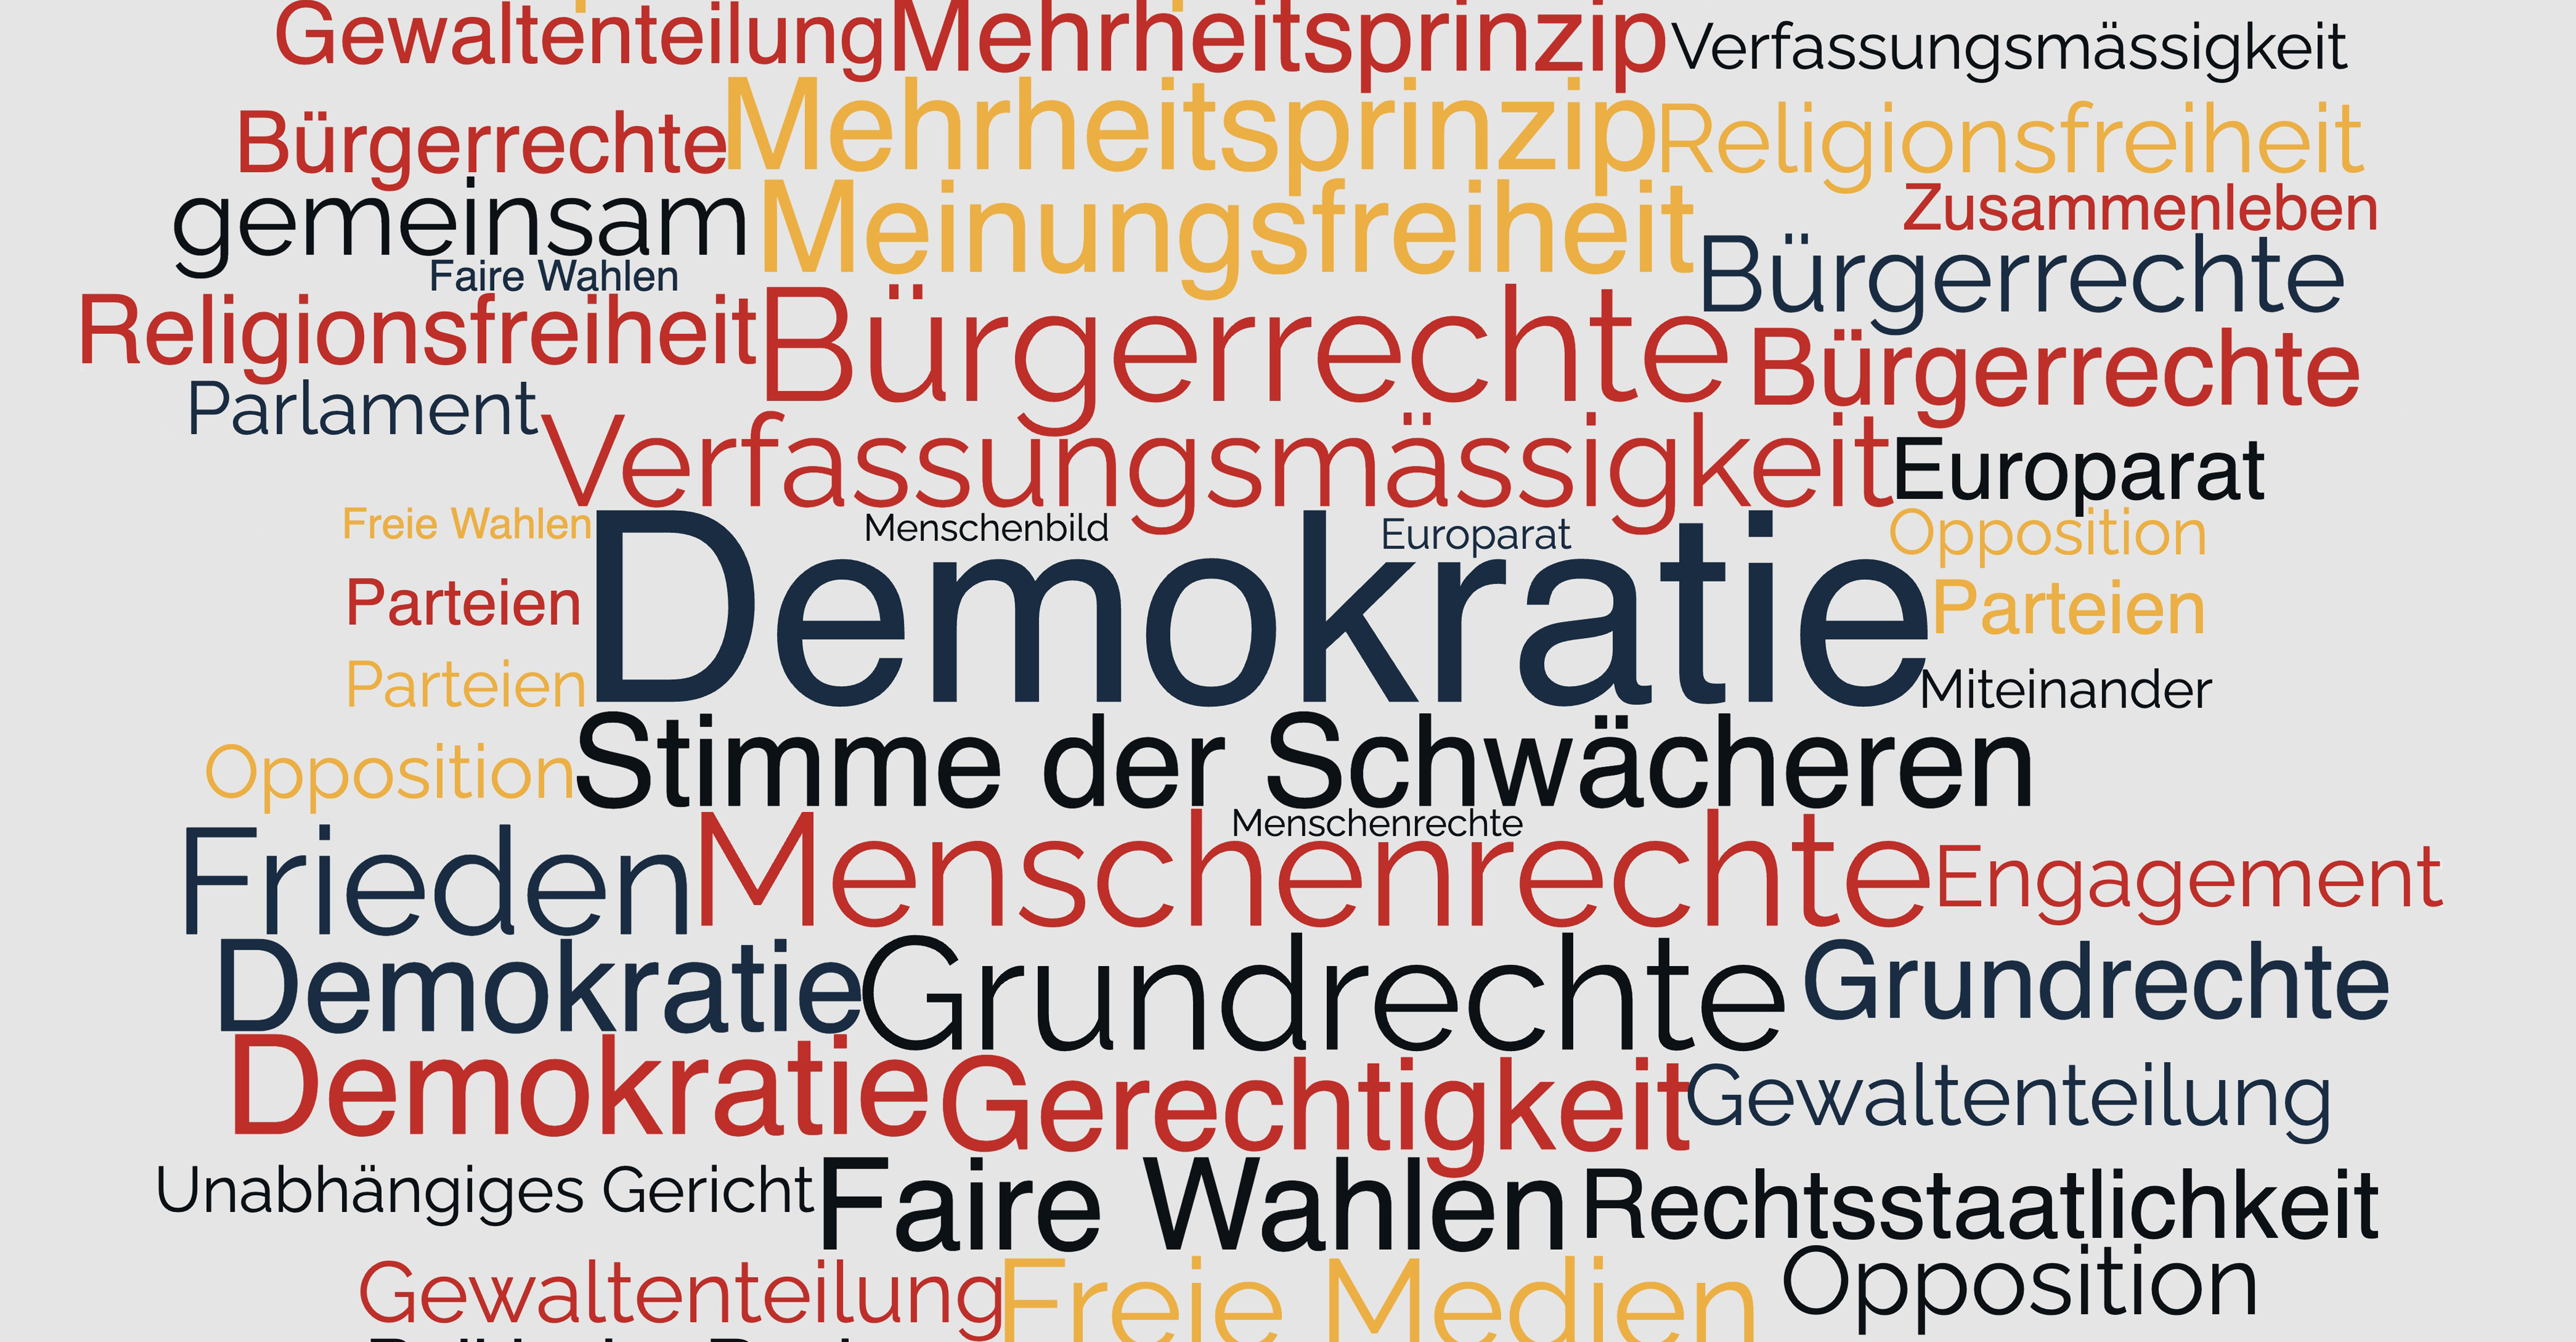 Wortwolke mit wichtigen Begriffen rund um das Thema Demokratie